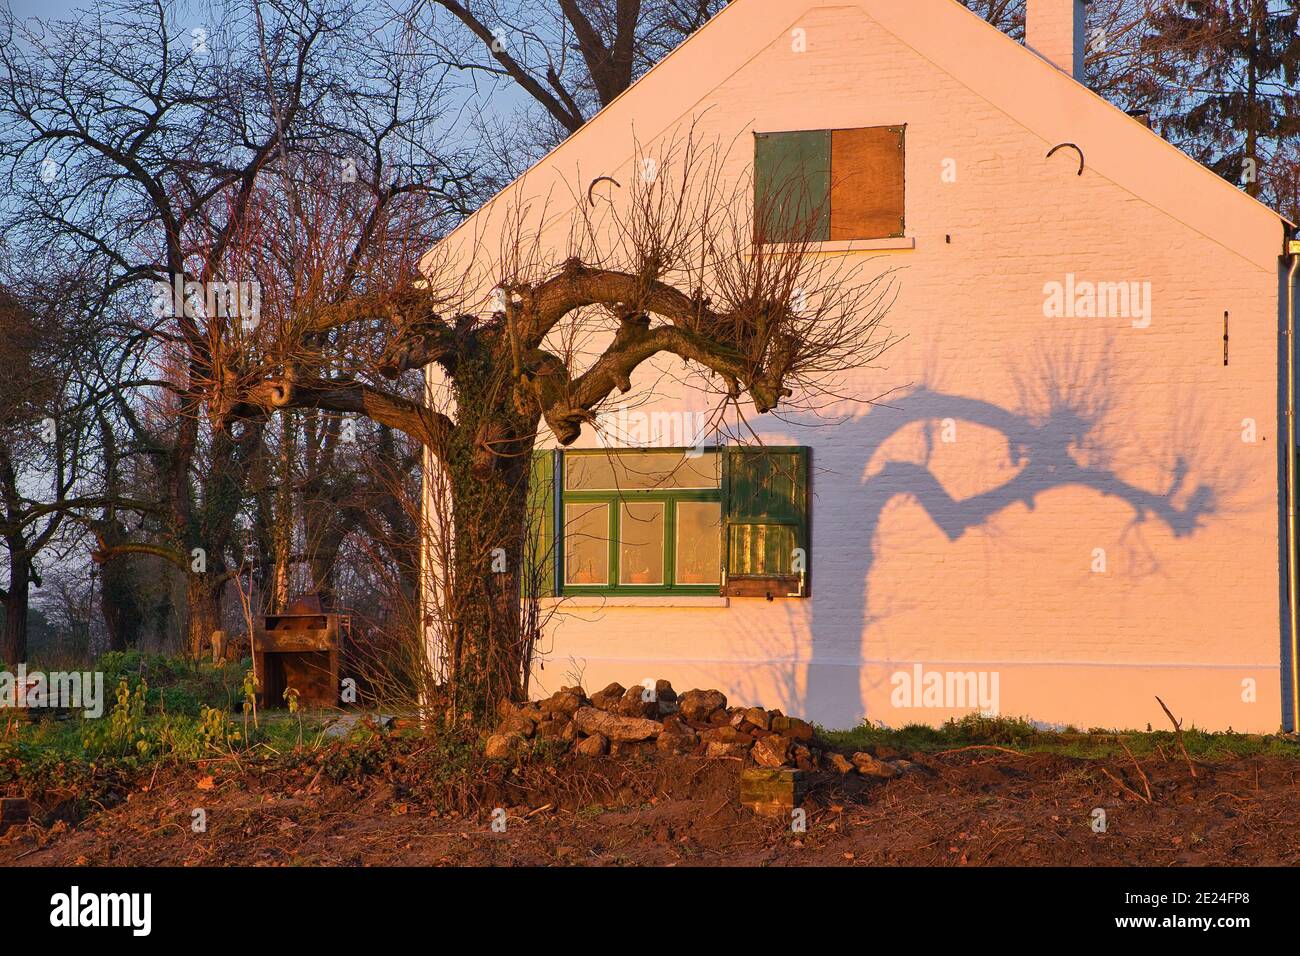 Gros plan d'arbres près d'une maison et d'une ombre d'un arbre sur un mur près d'une fenêtre ouverte po Banque D'Images